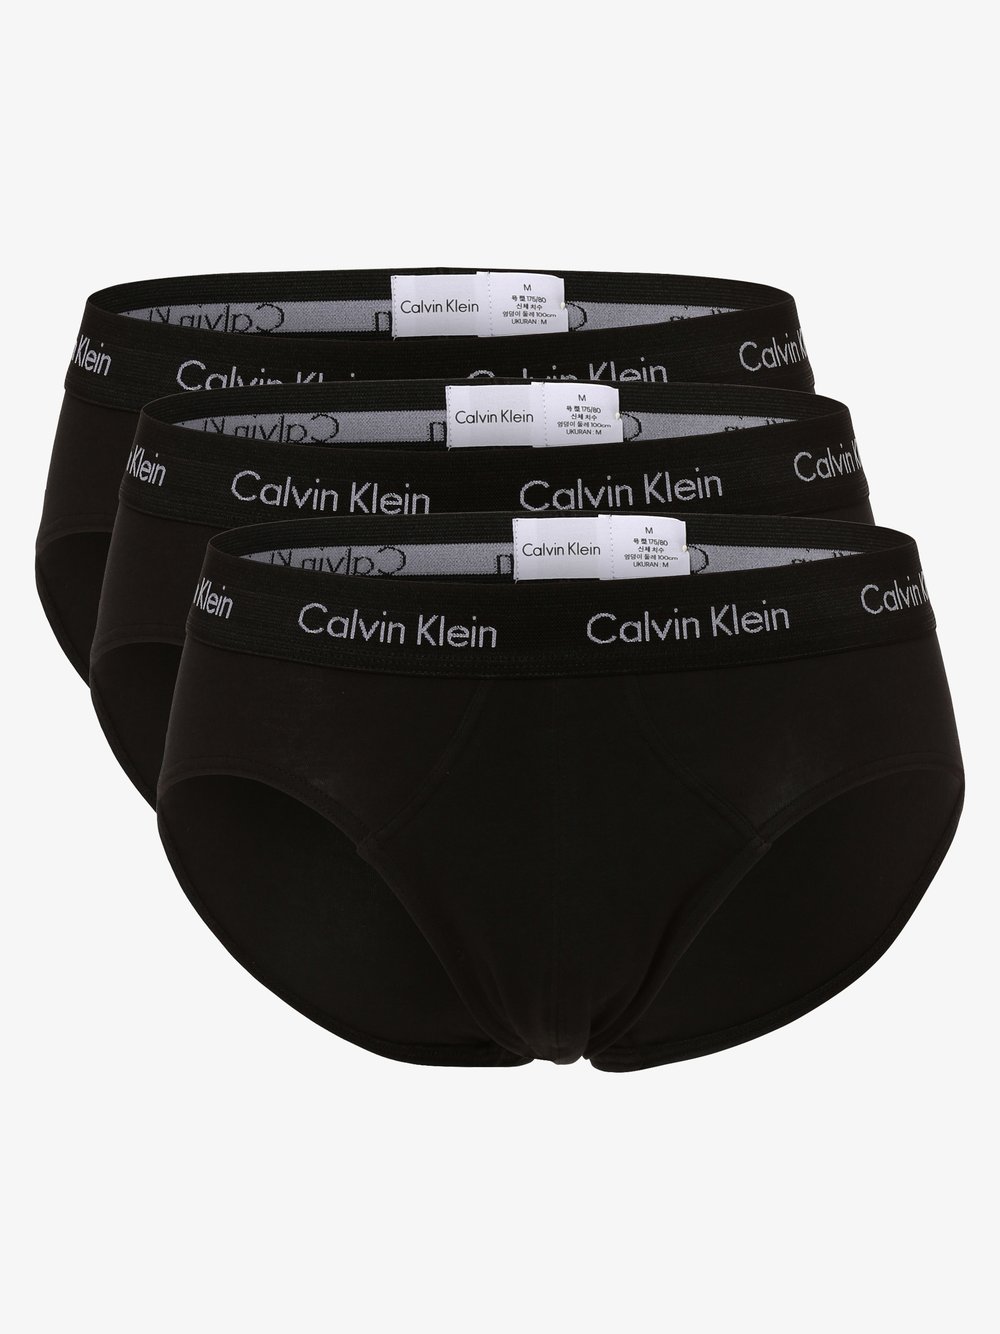 Calvin Klein - Slipy męskie pakowane po 3 szt., czarny